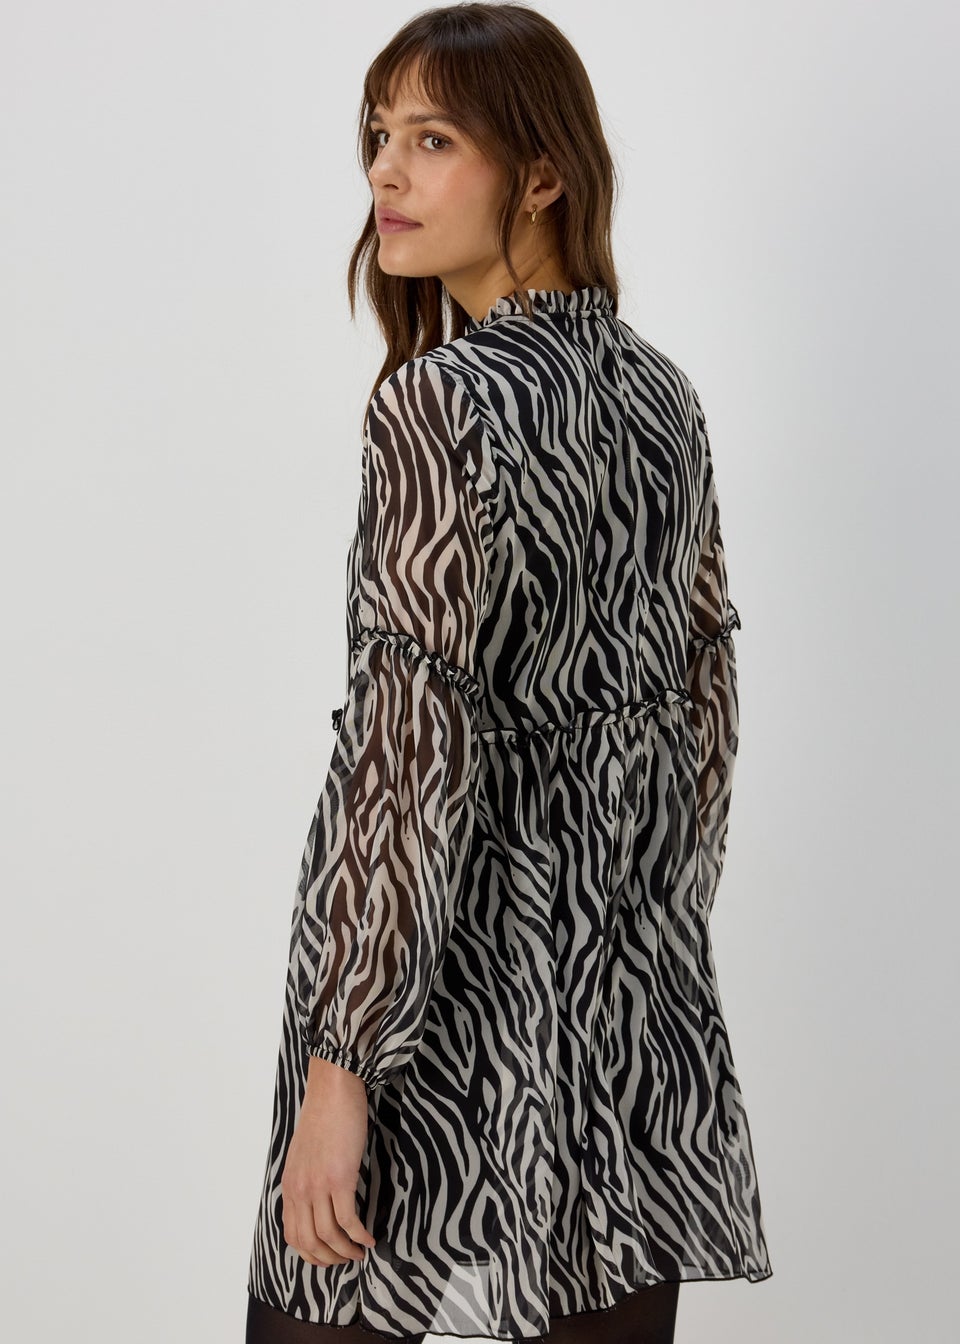 Monochrome Zebra Frill Tieneck Dress